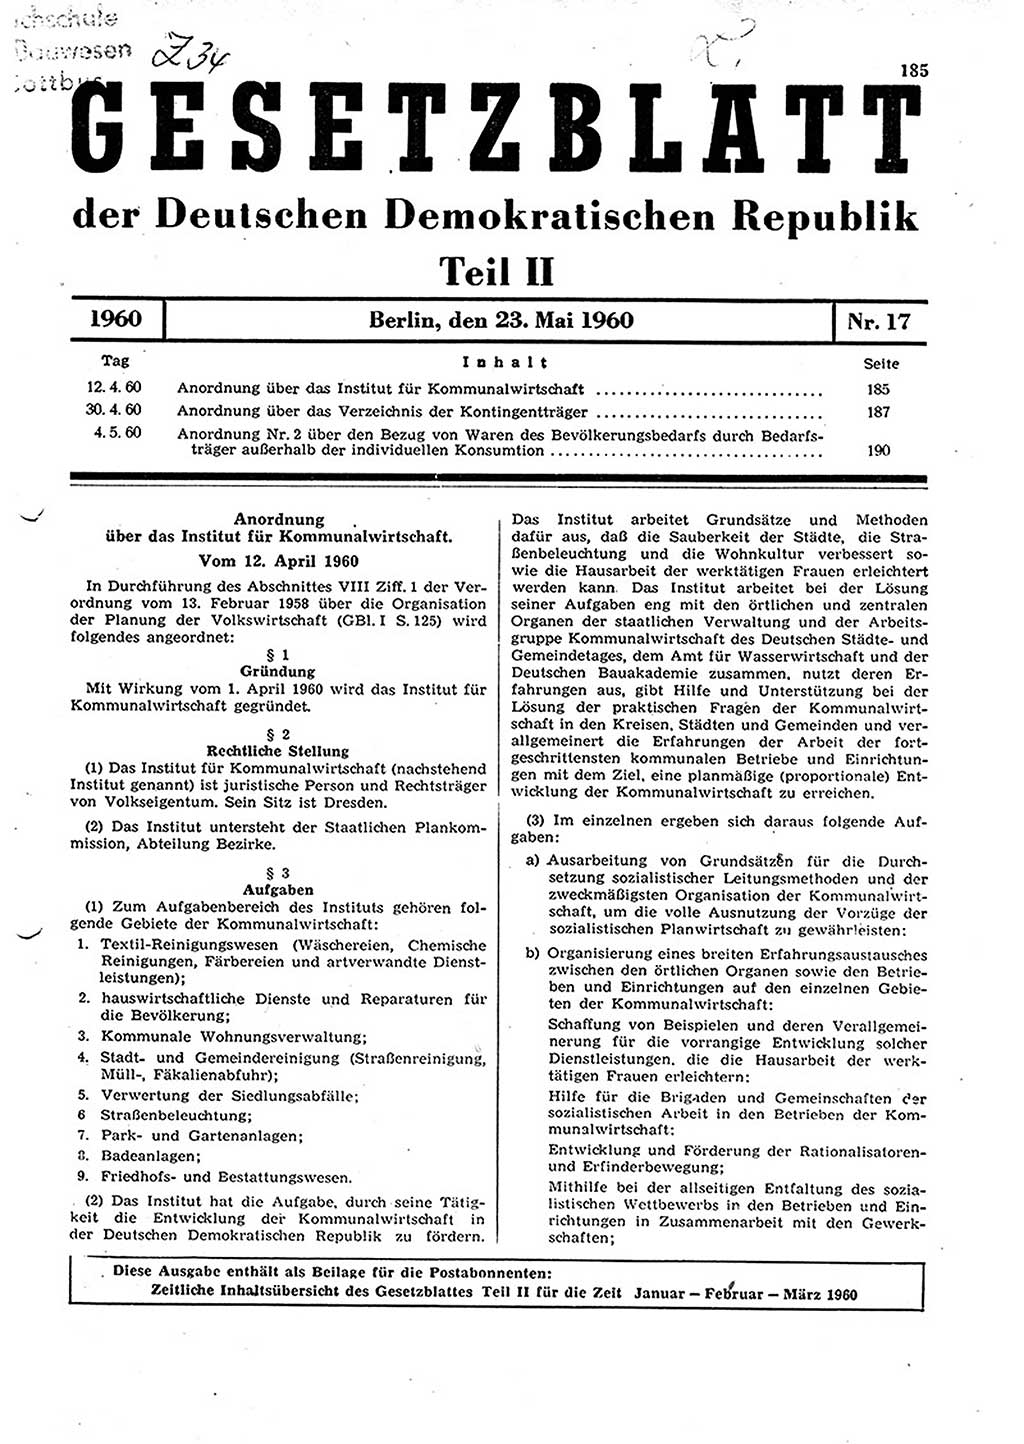 Gesetzblatt (GBl.) der Deutschen Demokratischen Republik (DDR) Teil ⅠⅠ 1960, Seite 185 (GBl. DDR ⅠⅠ 1960, S. 185)